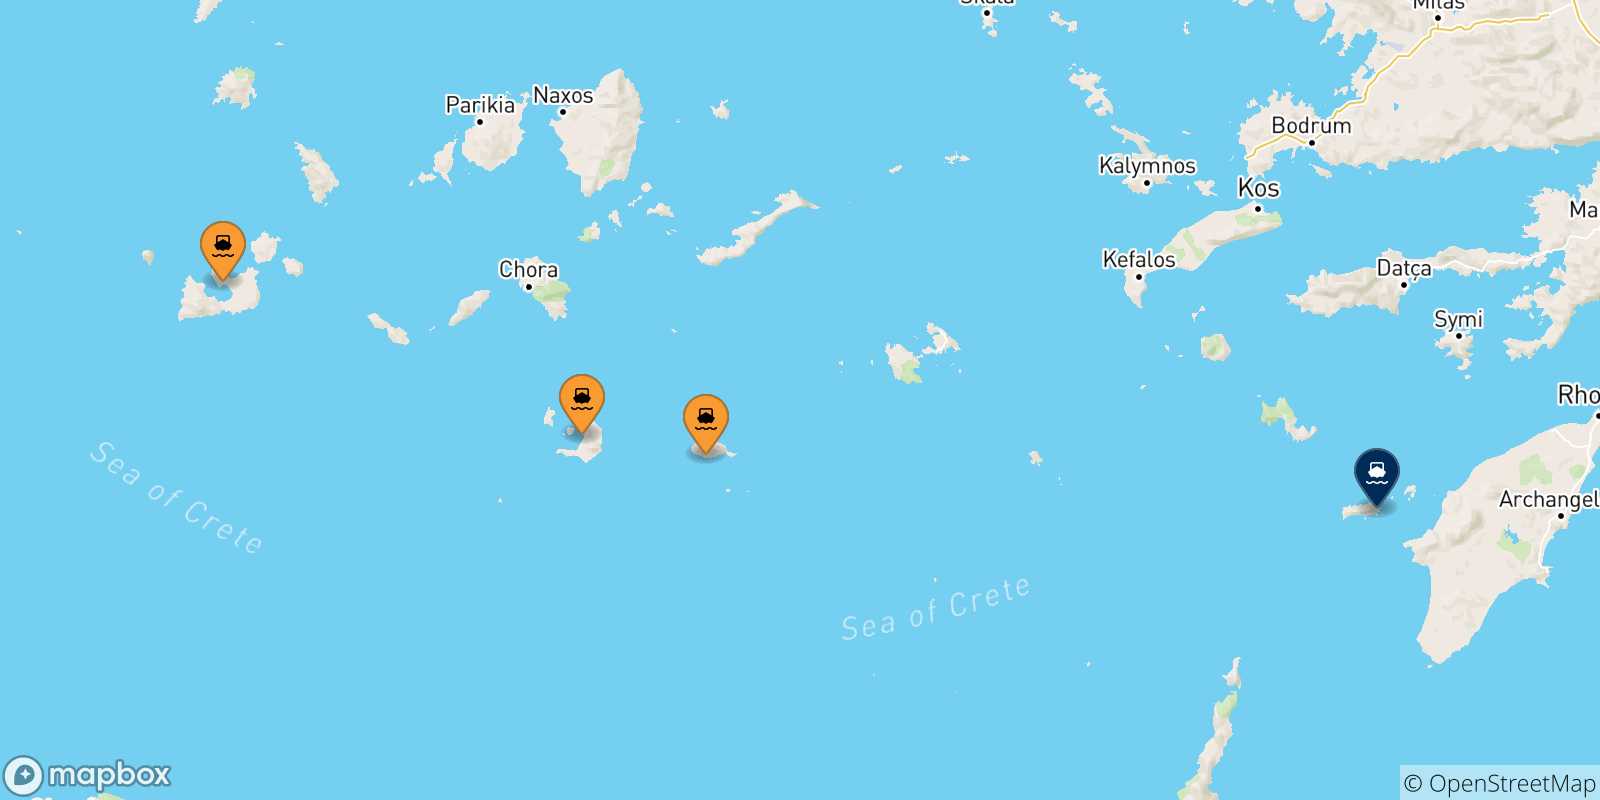 Mappa delle possibili rotte tra le Isole Cicladi e Chalki